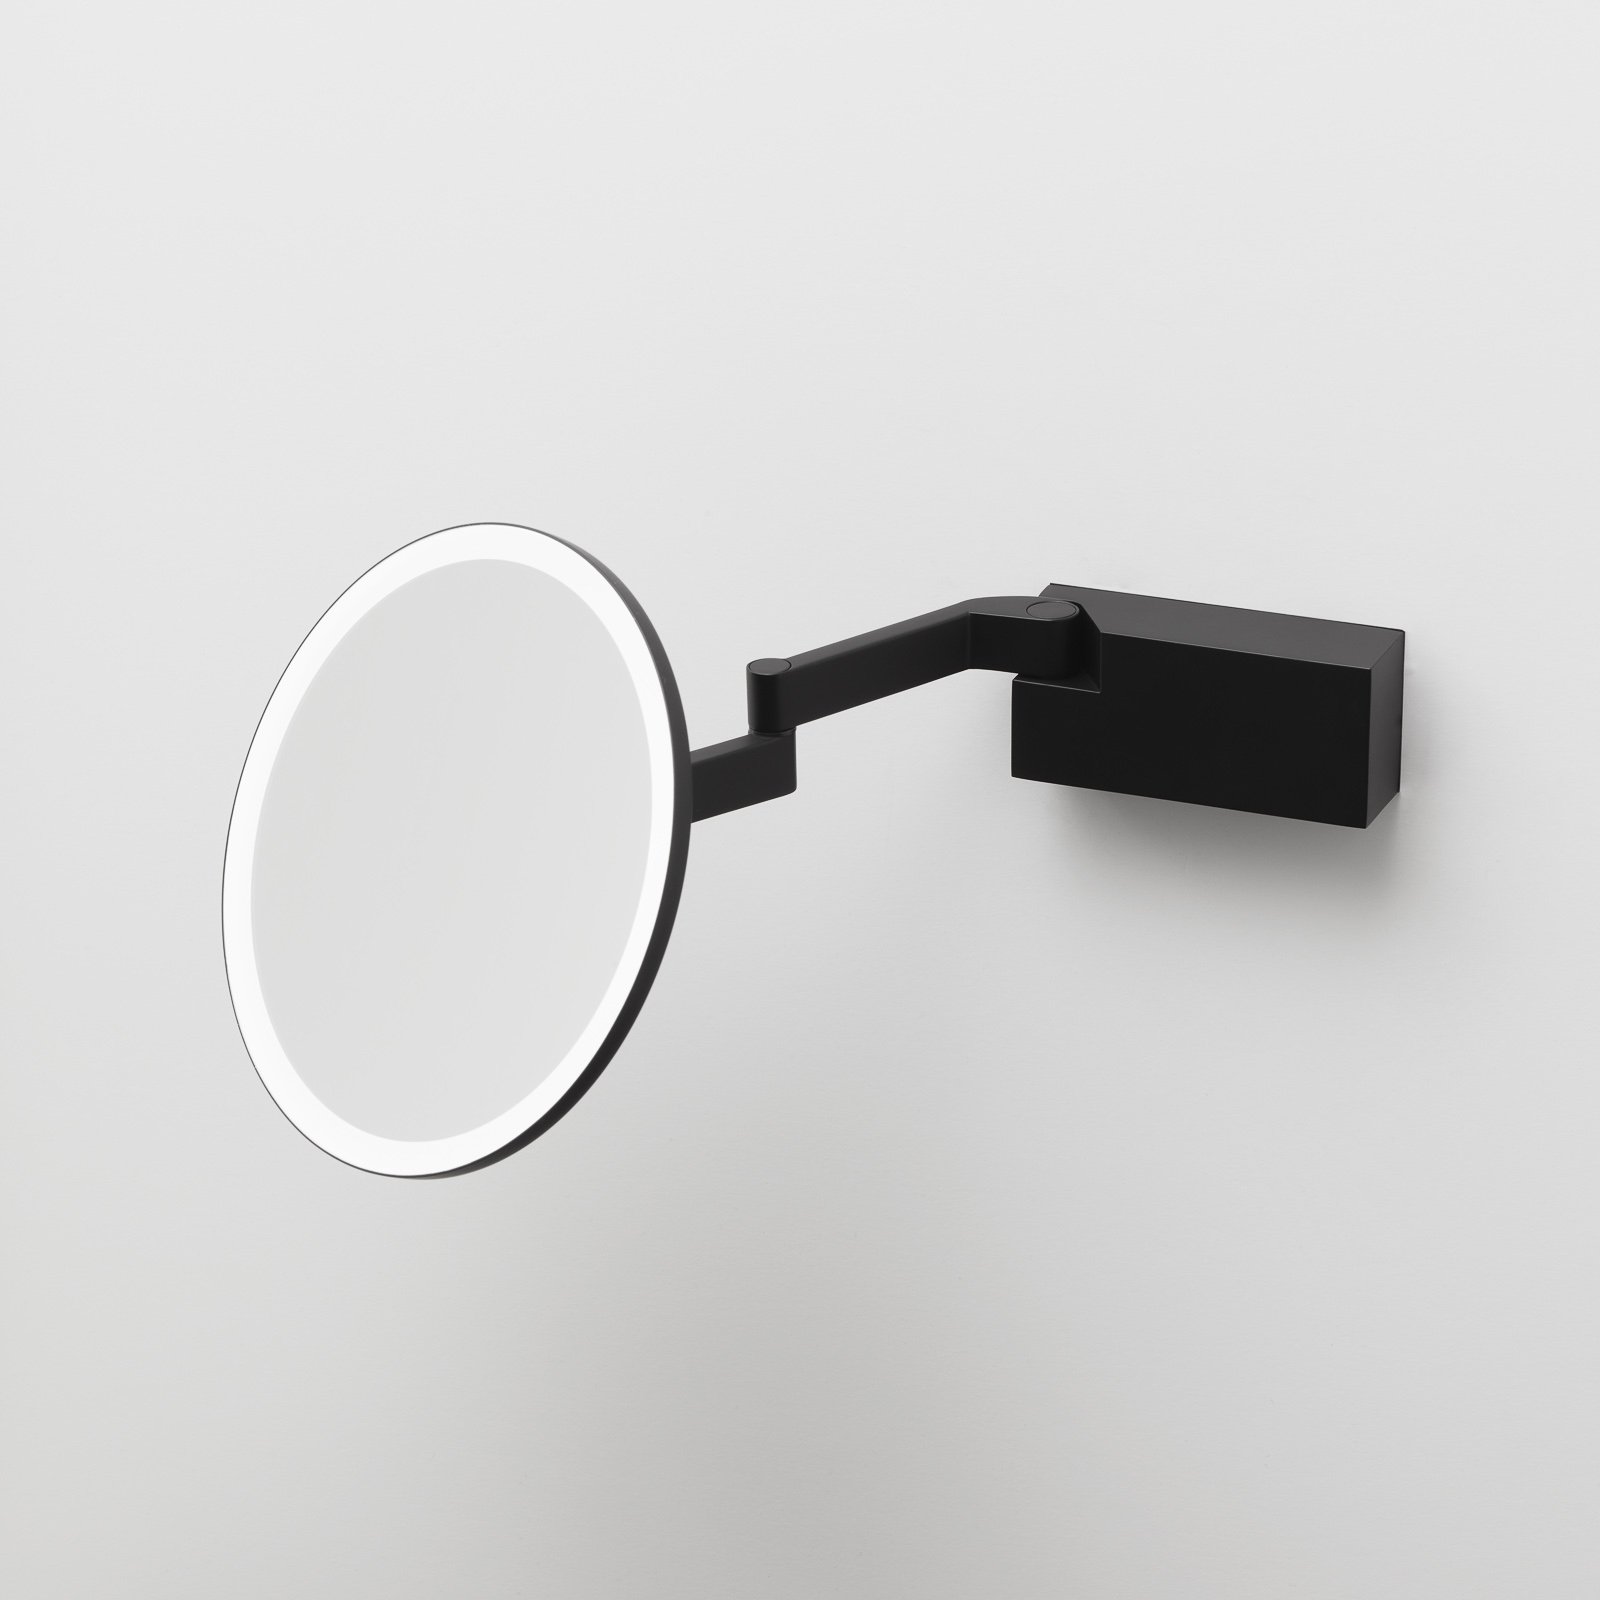 Decor Walther Vision R LED espelho de maquilhagem preto